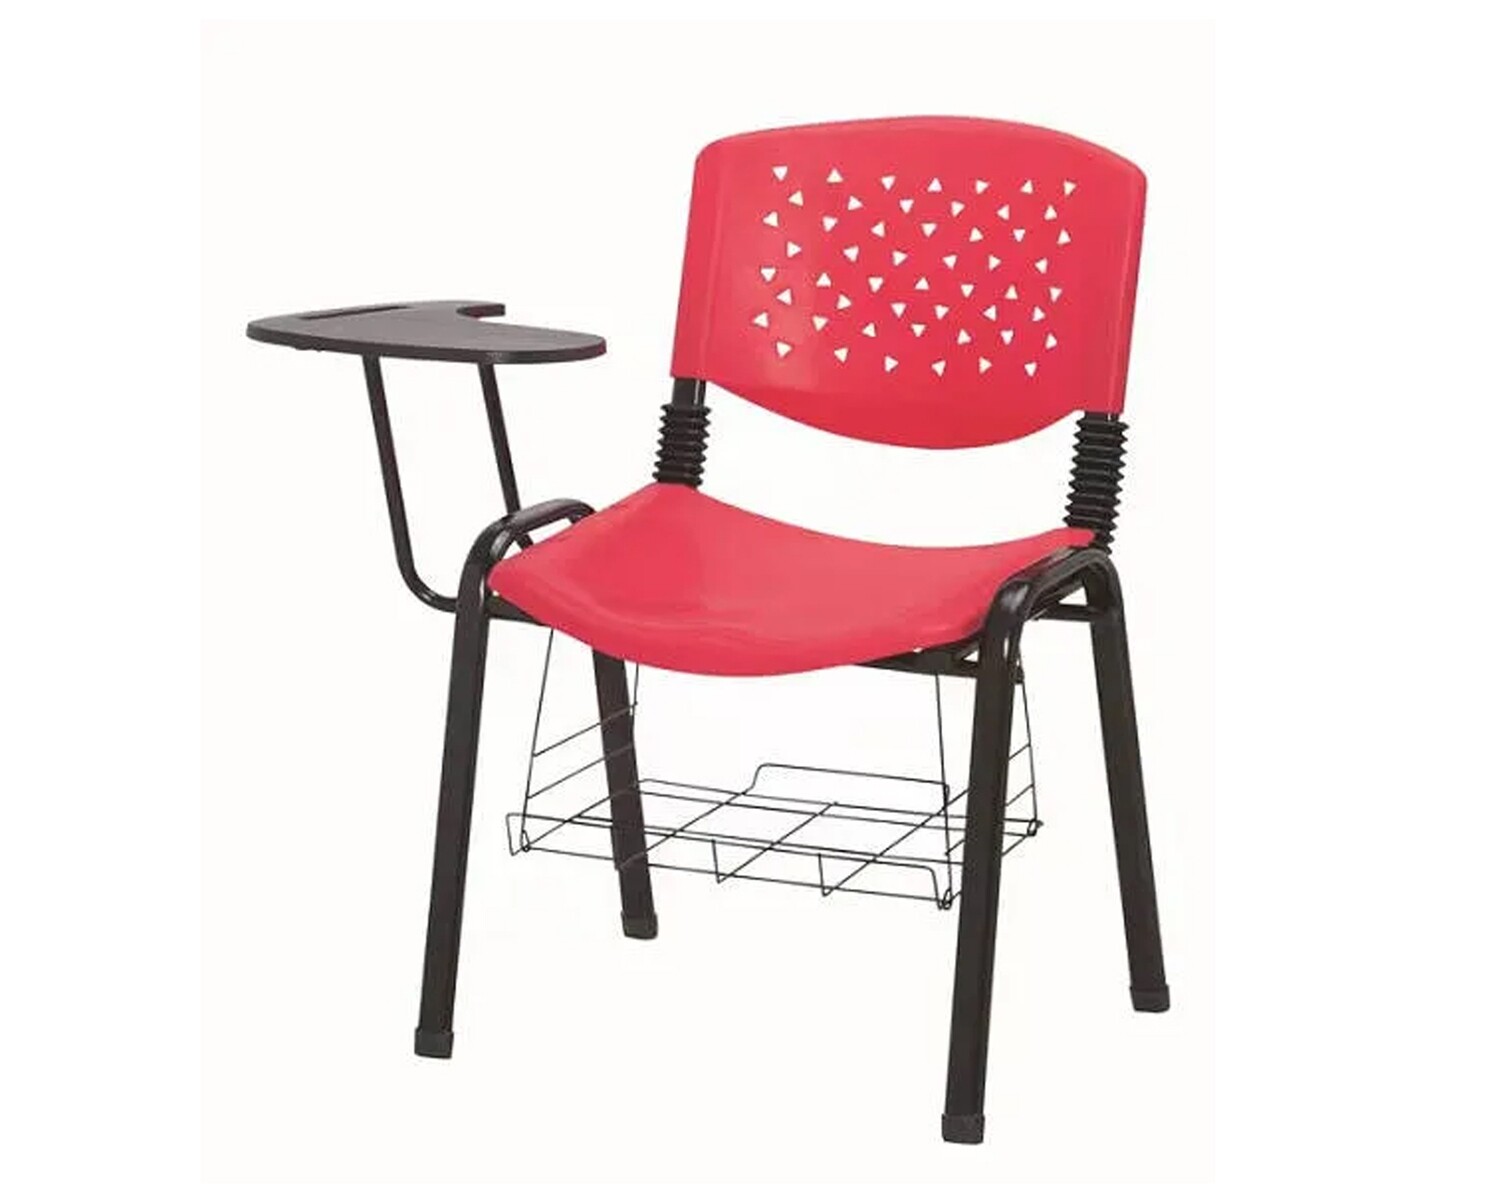 Ofix Deluxe-31W School Chair